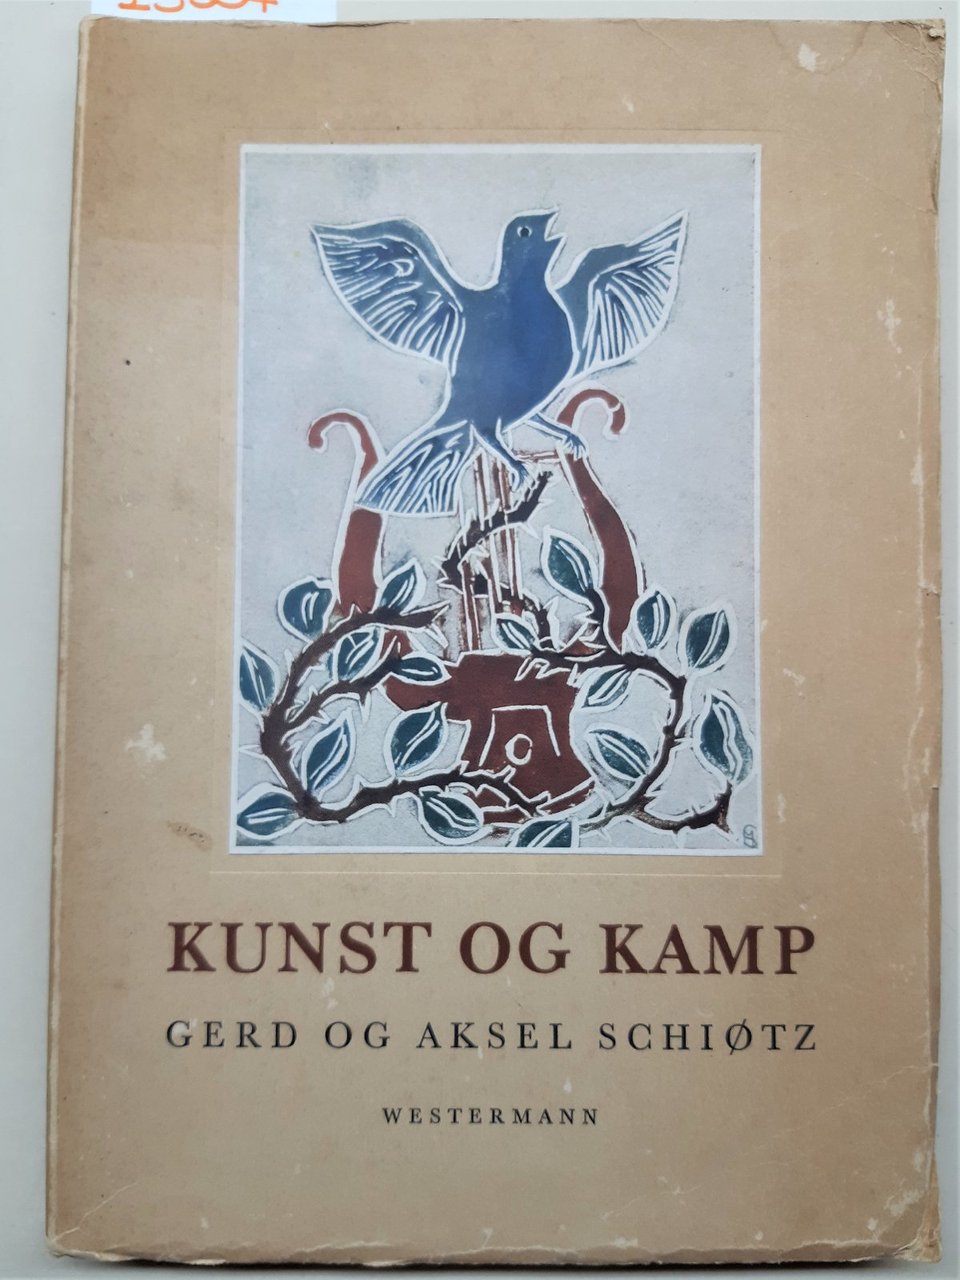 Herr og Aksel Schiotz Kunt Og Kamp Westermann 1951